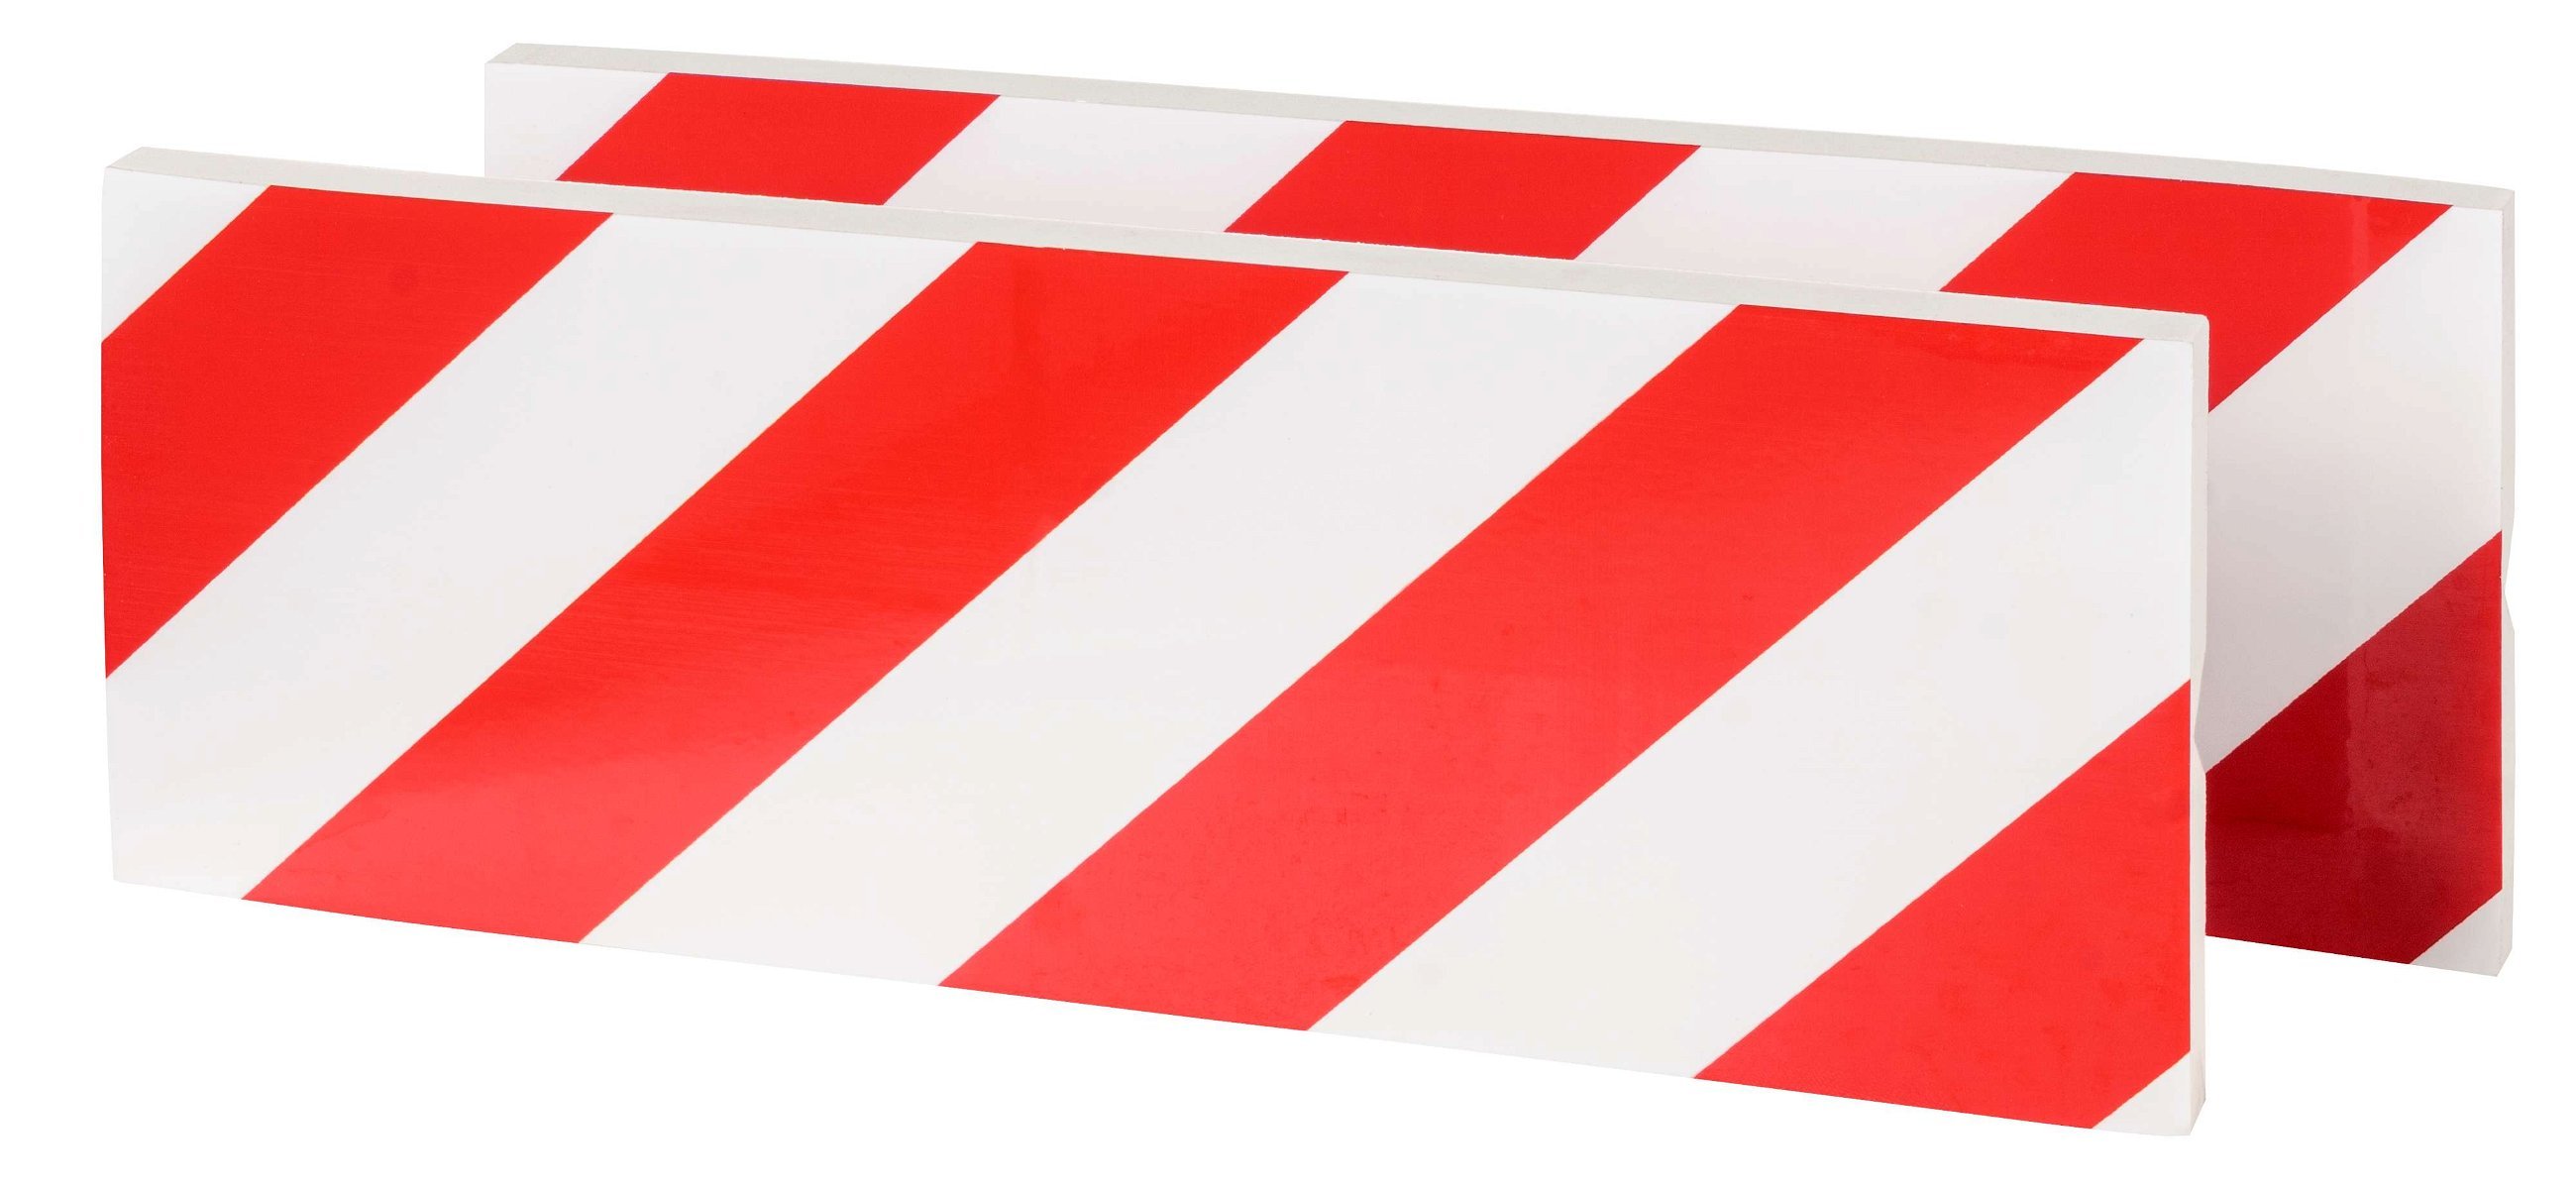 Garage wandbescherming, 2 stuks Autoportier randbescherming zelfklevend 40x15x1,5 cm rood/wit